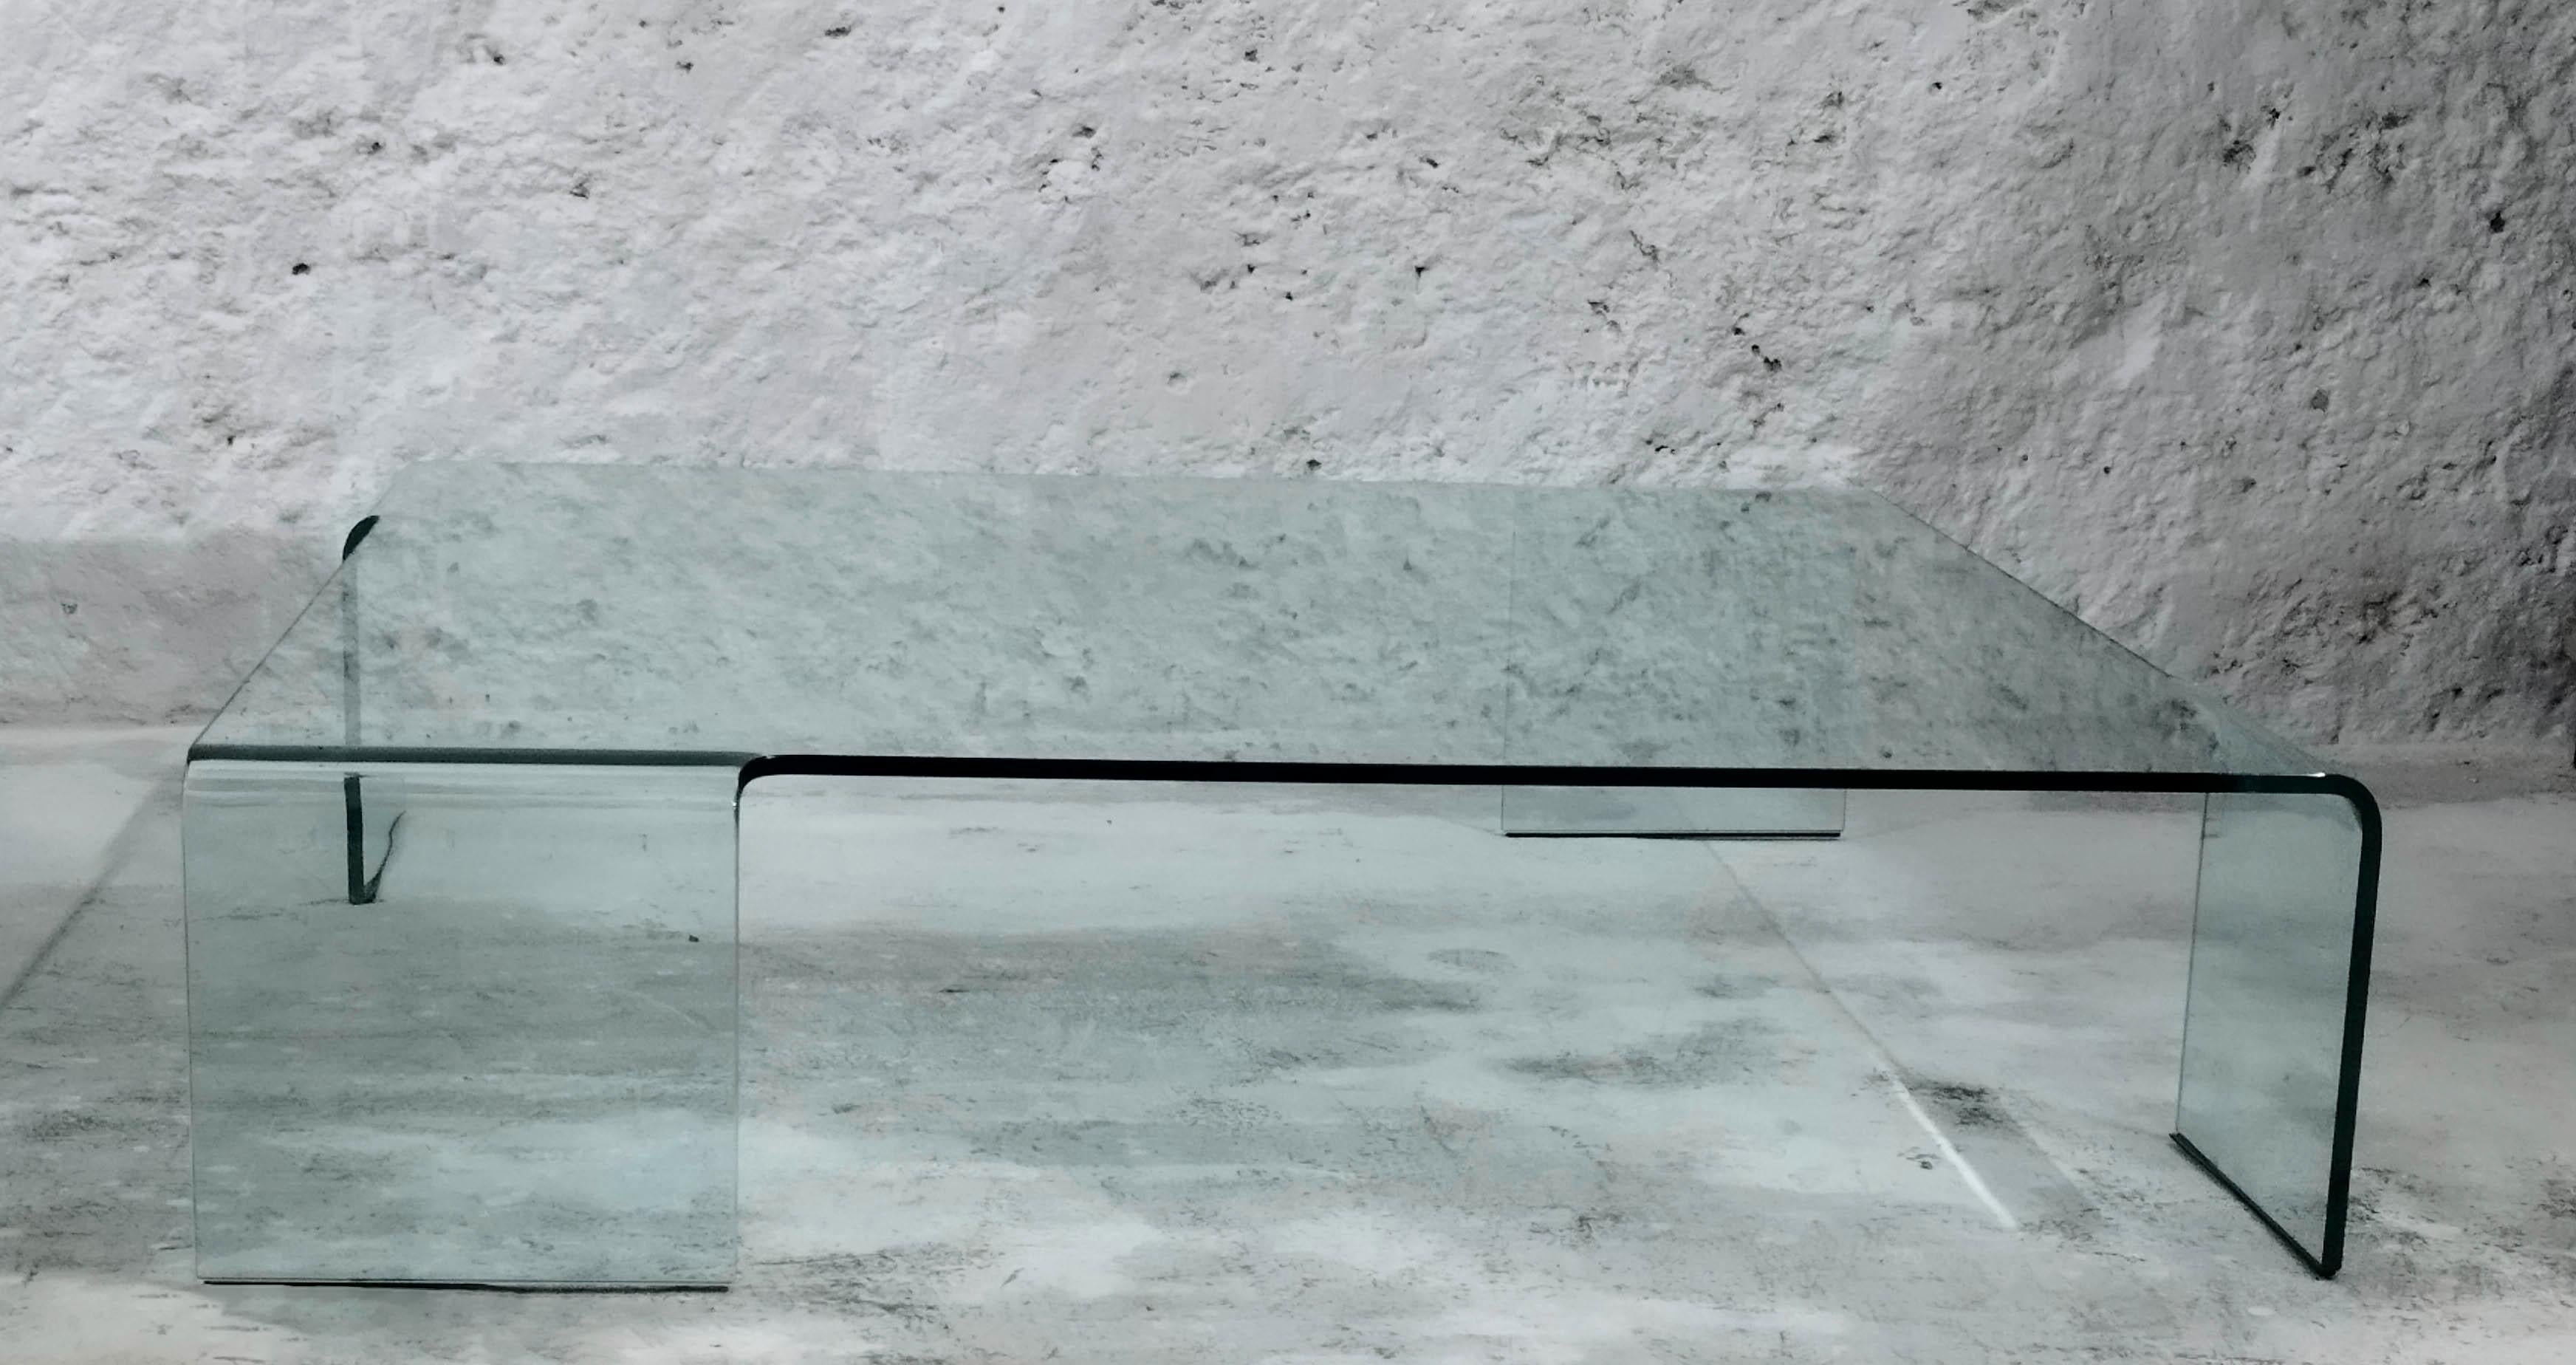 Rodolfo Dordoni hat mehrere Möbelstücke für FIAM entworfen, darunter Neutra, den niedrigen Tisch aus gebogenem Glas.
Der Architekt und Designer Rodolfo Dordoni wurde 1954 in Mailand geboren, wo er 1979 seinen Abschluss in Architektur machte.
Sein